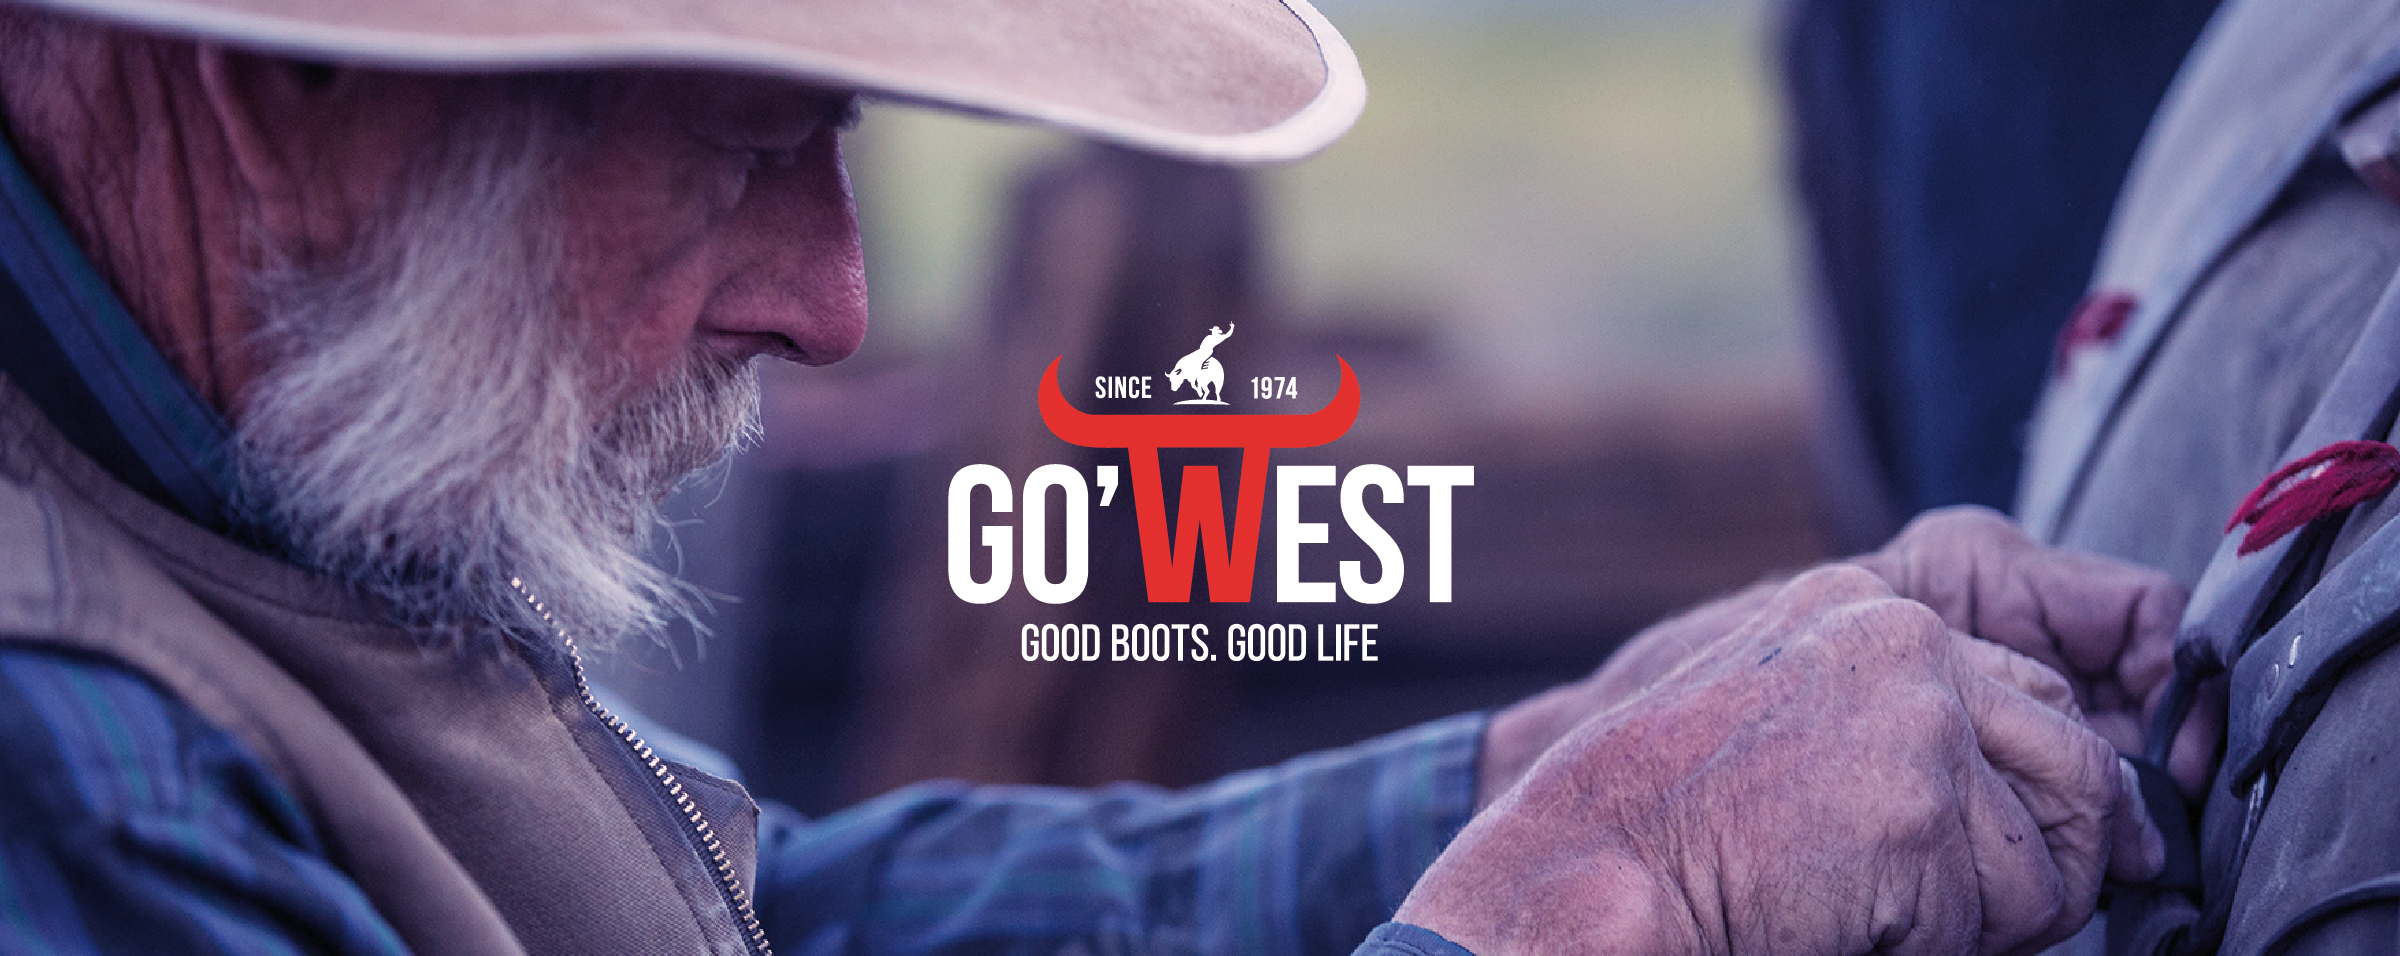 LEE NOIR ATANADO HOMME GOWEST SANTIAG - Go'west Boots